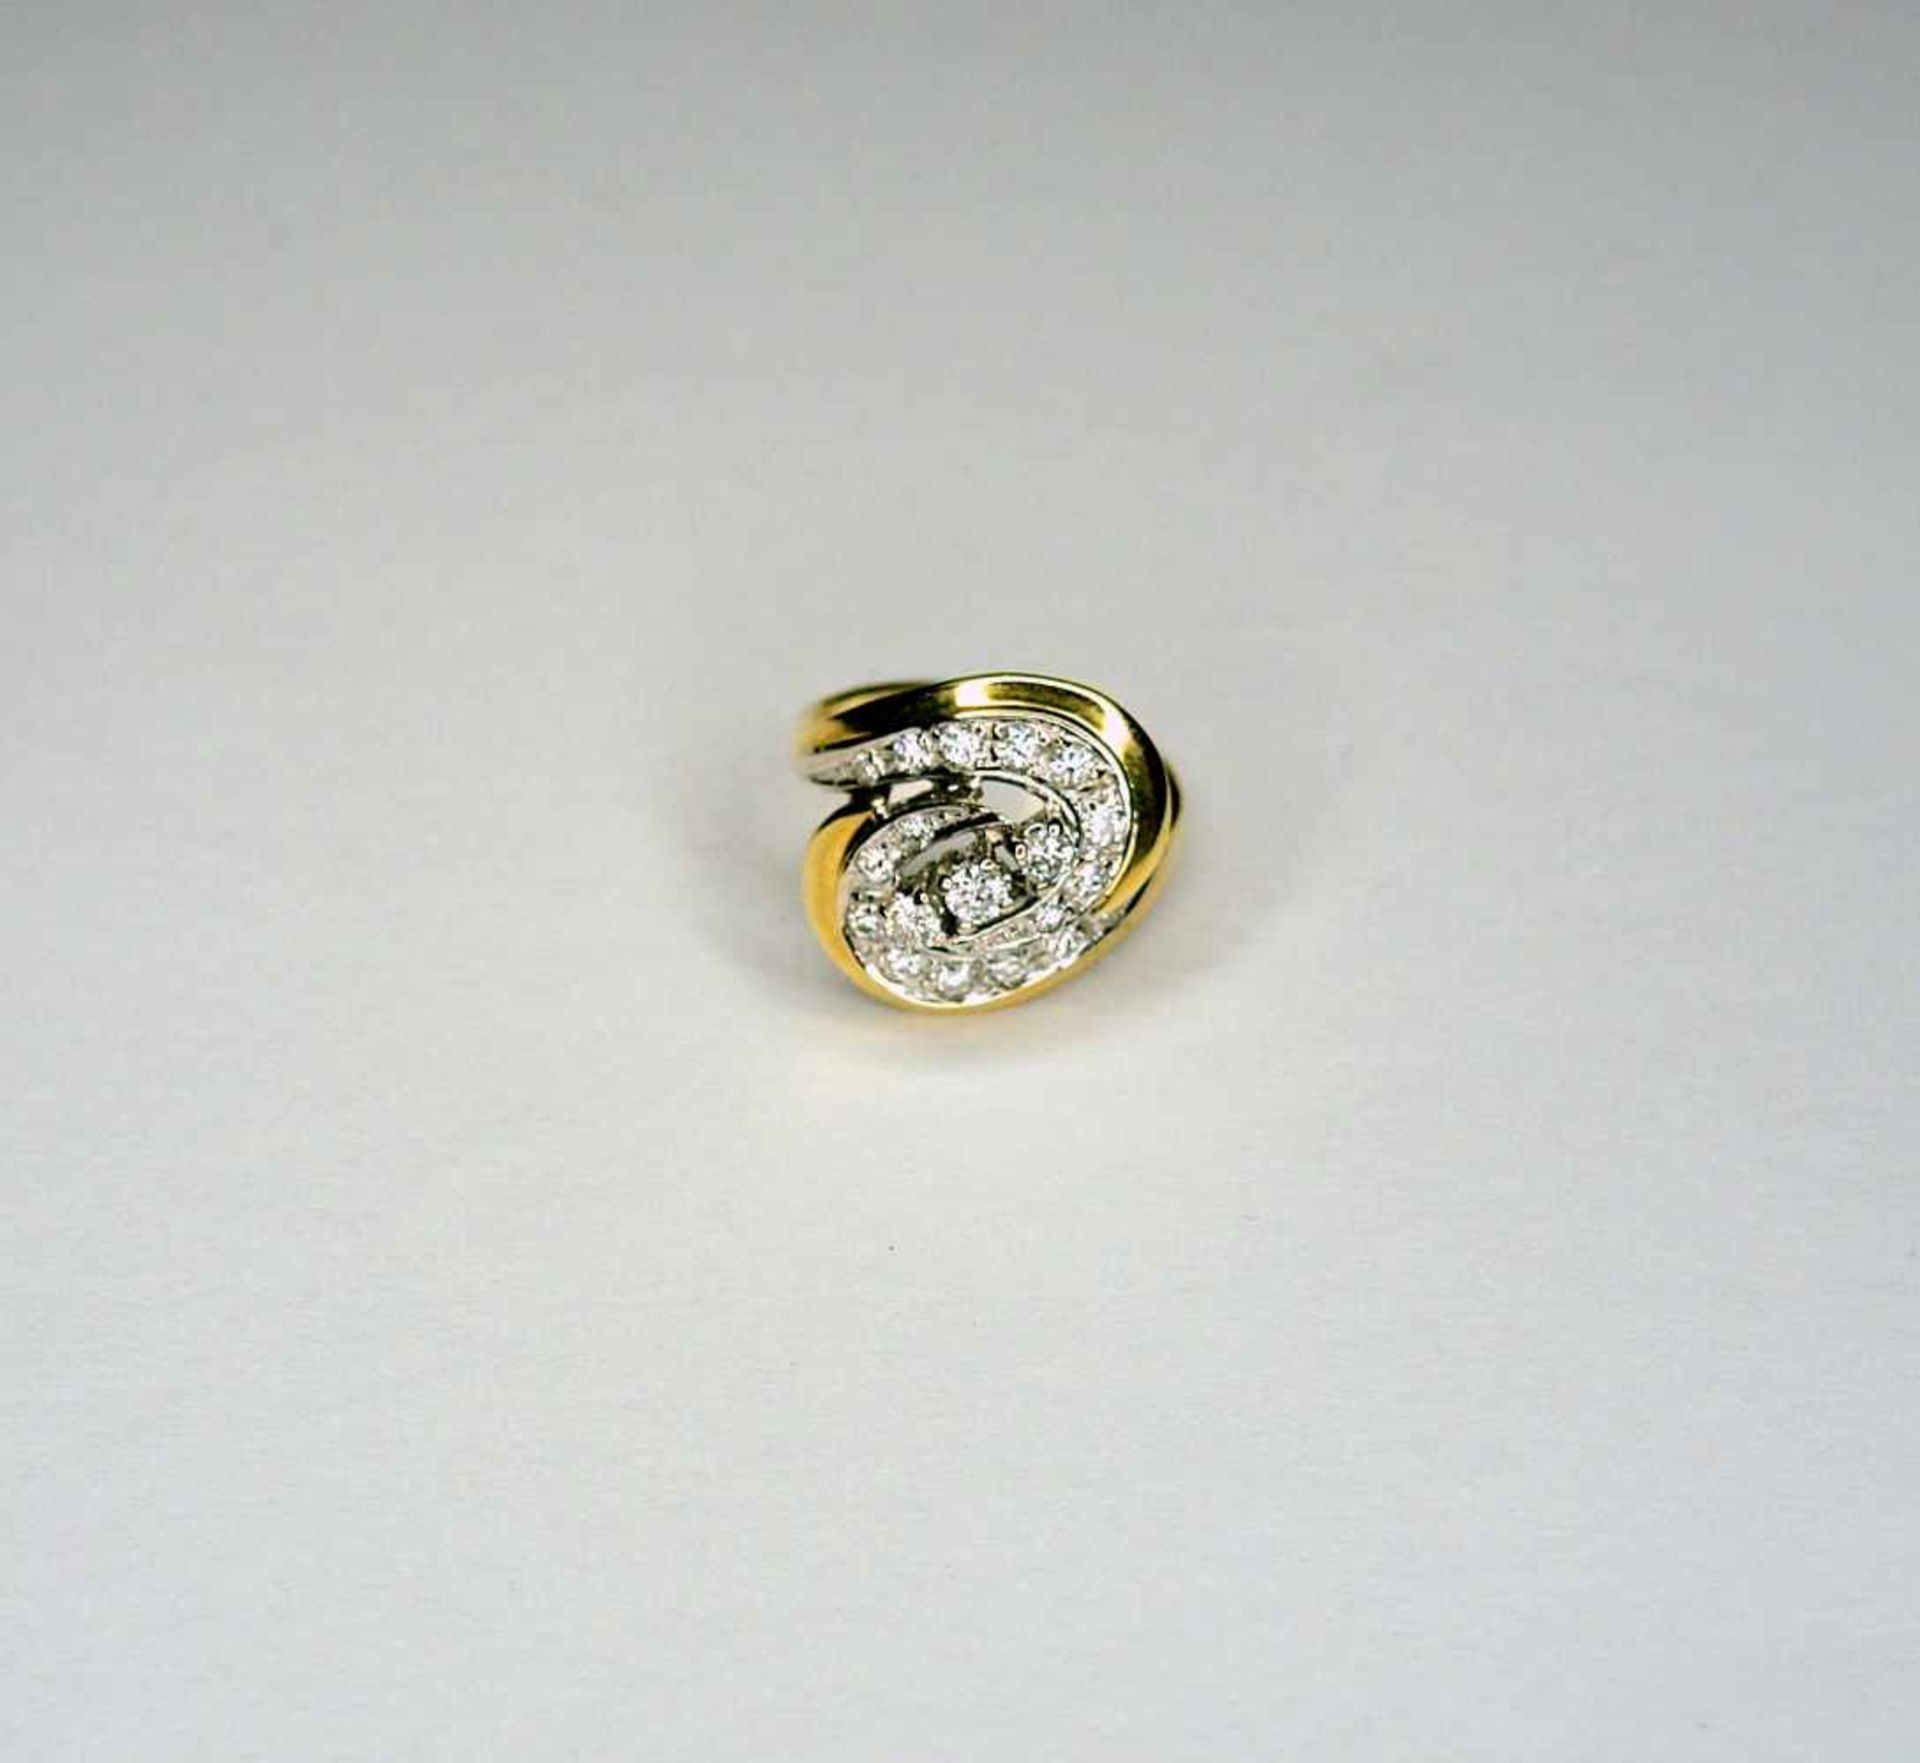 Diamant-Ring 14 K. Gold mit 19 Diamanten von ca. 1 ct. Ringgröße 54. Gewicht 5,7 g